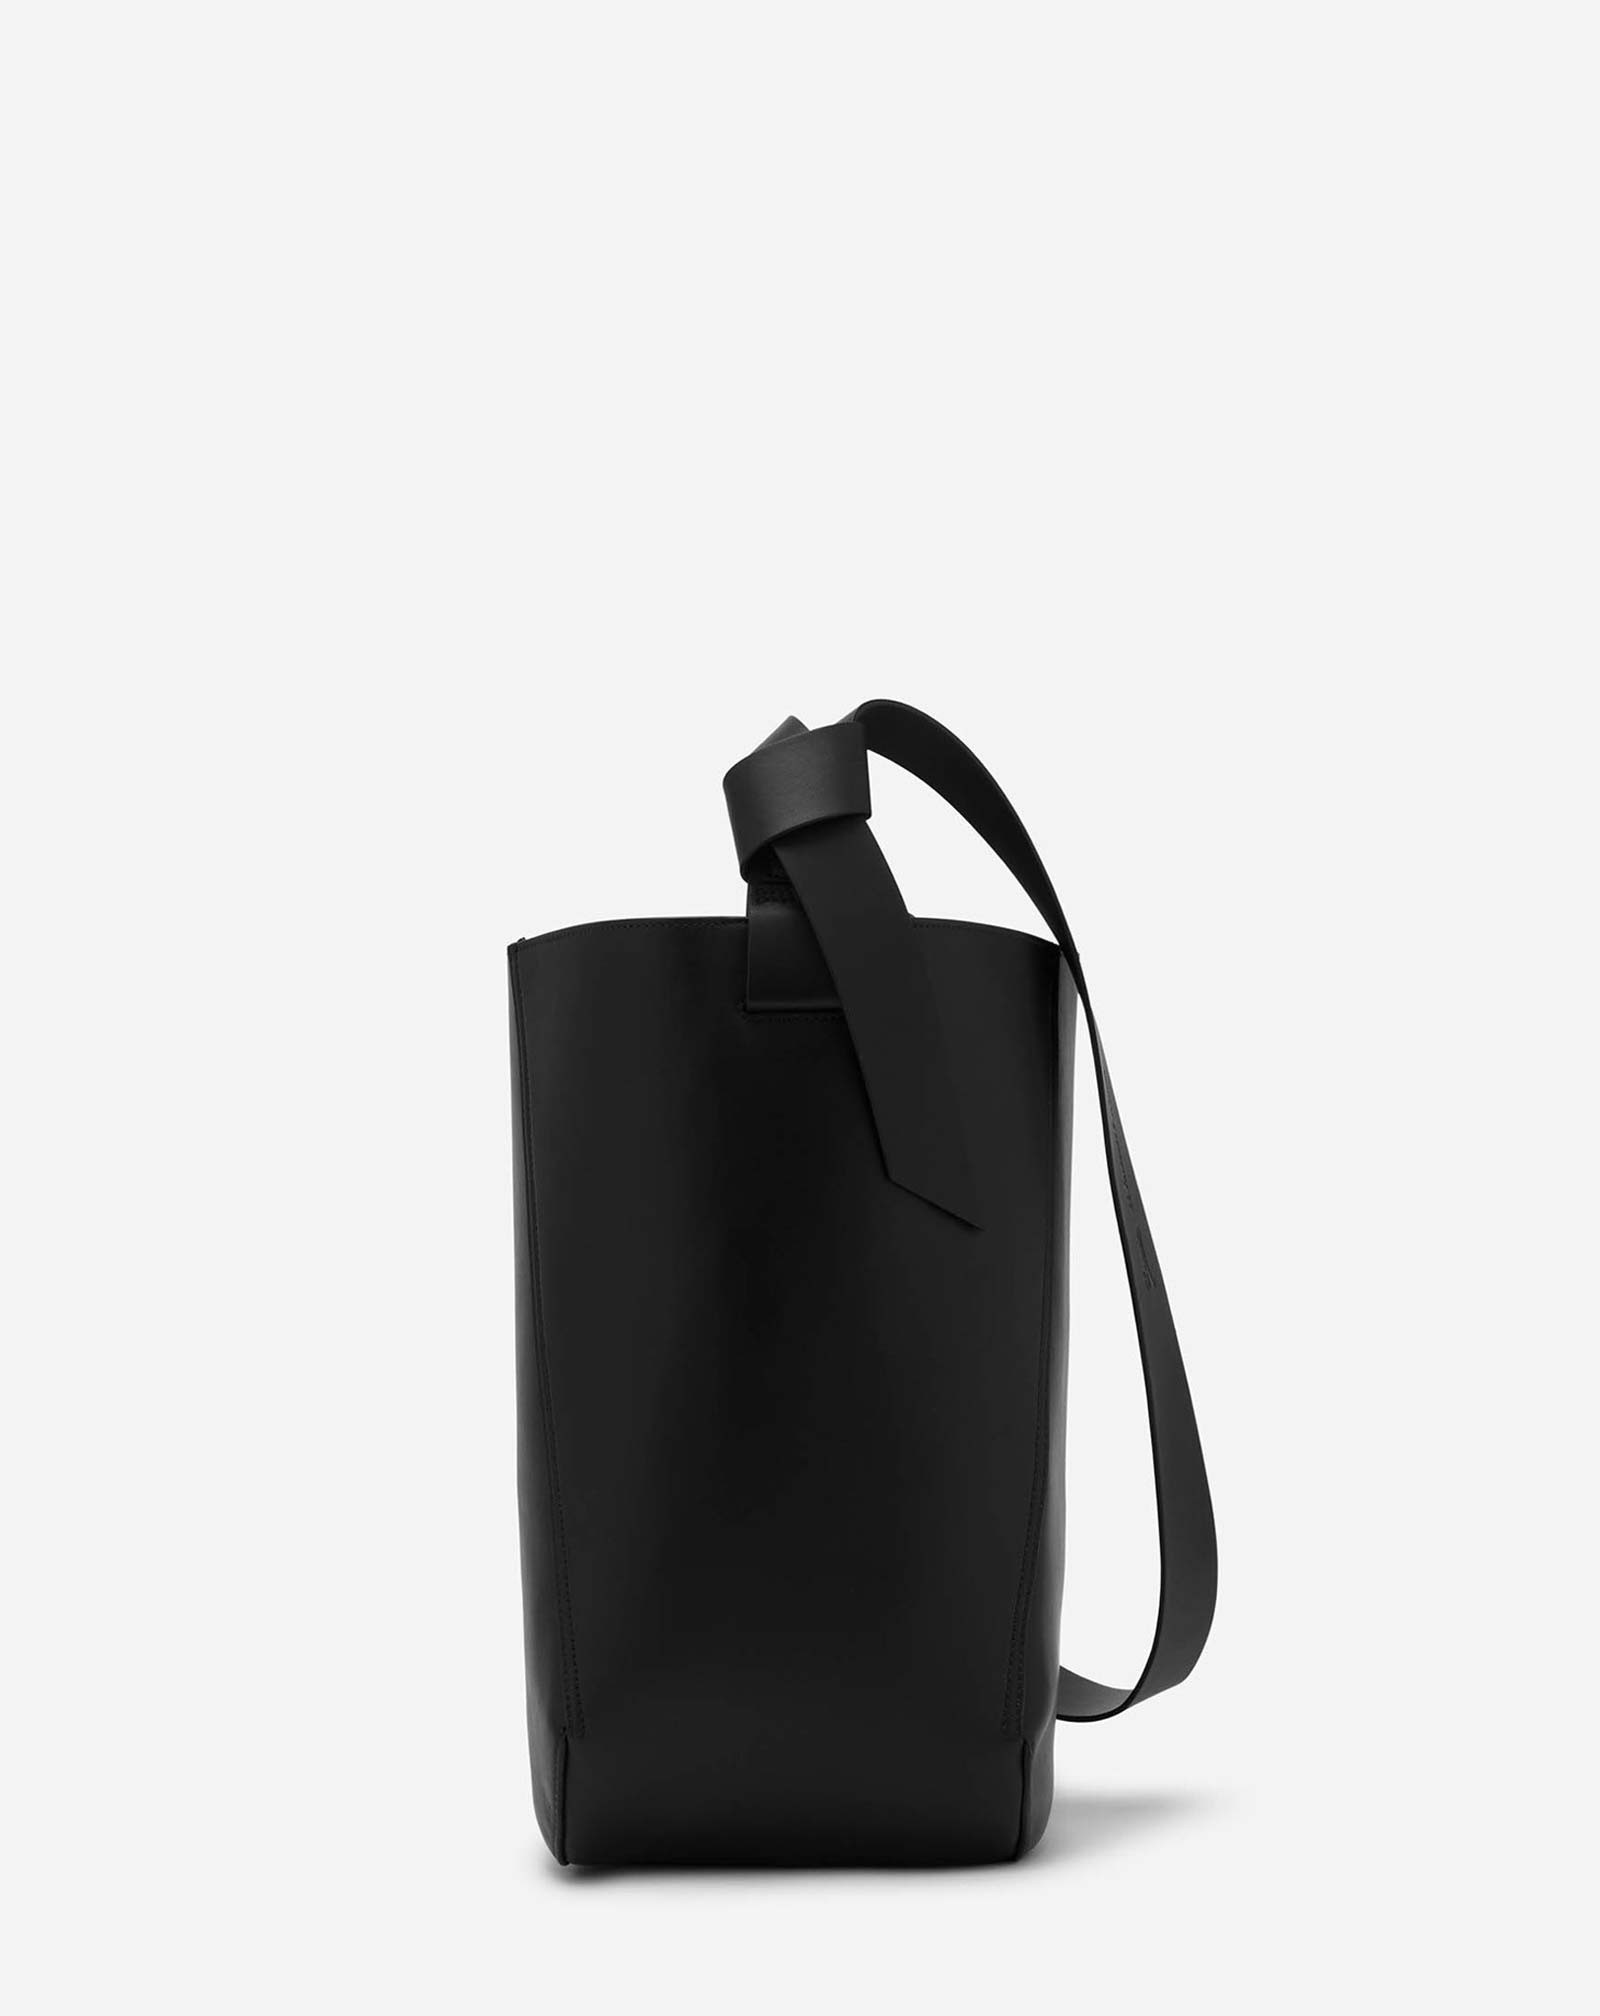 Lanvin Hobo Tie Leather Shoulder Bag - Black